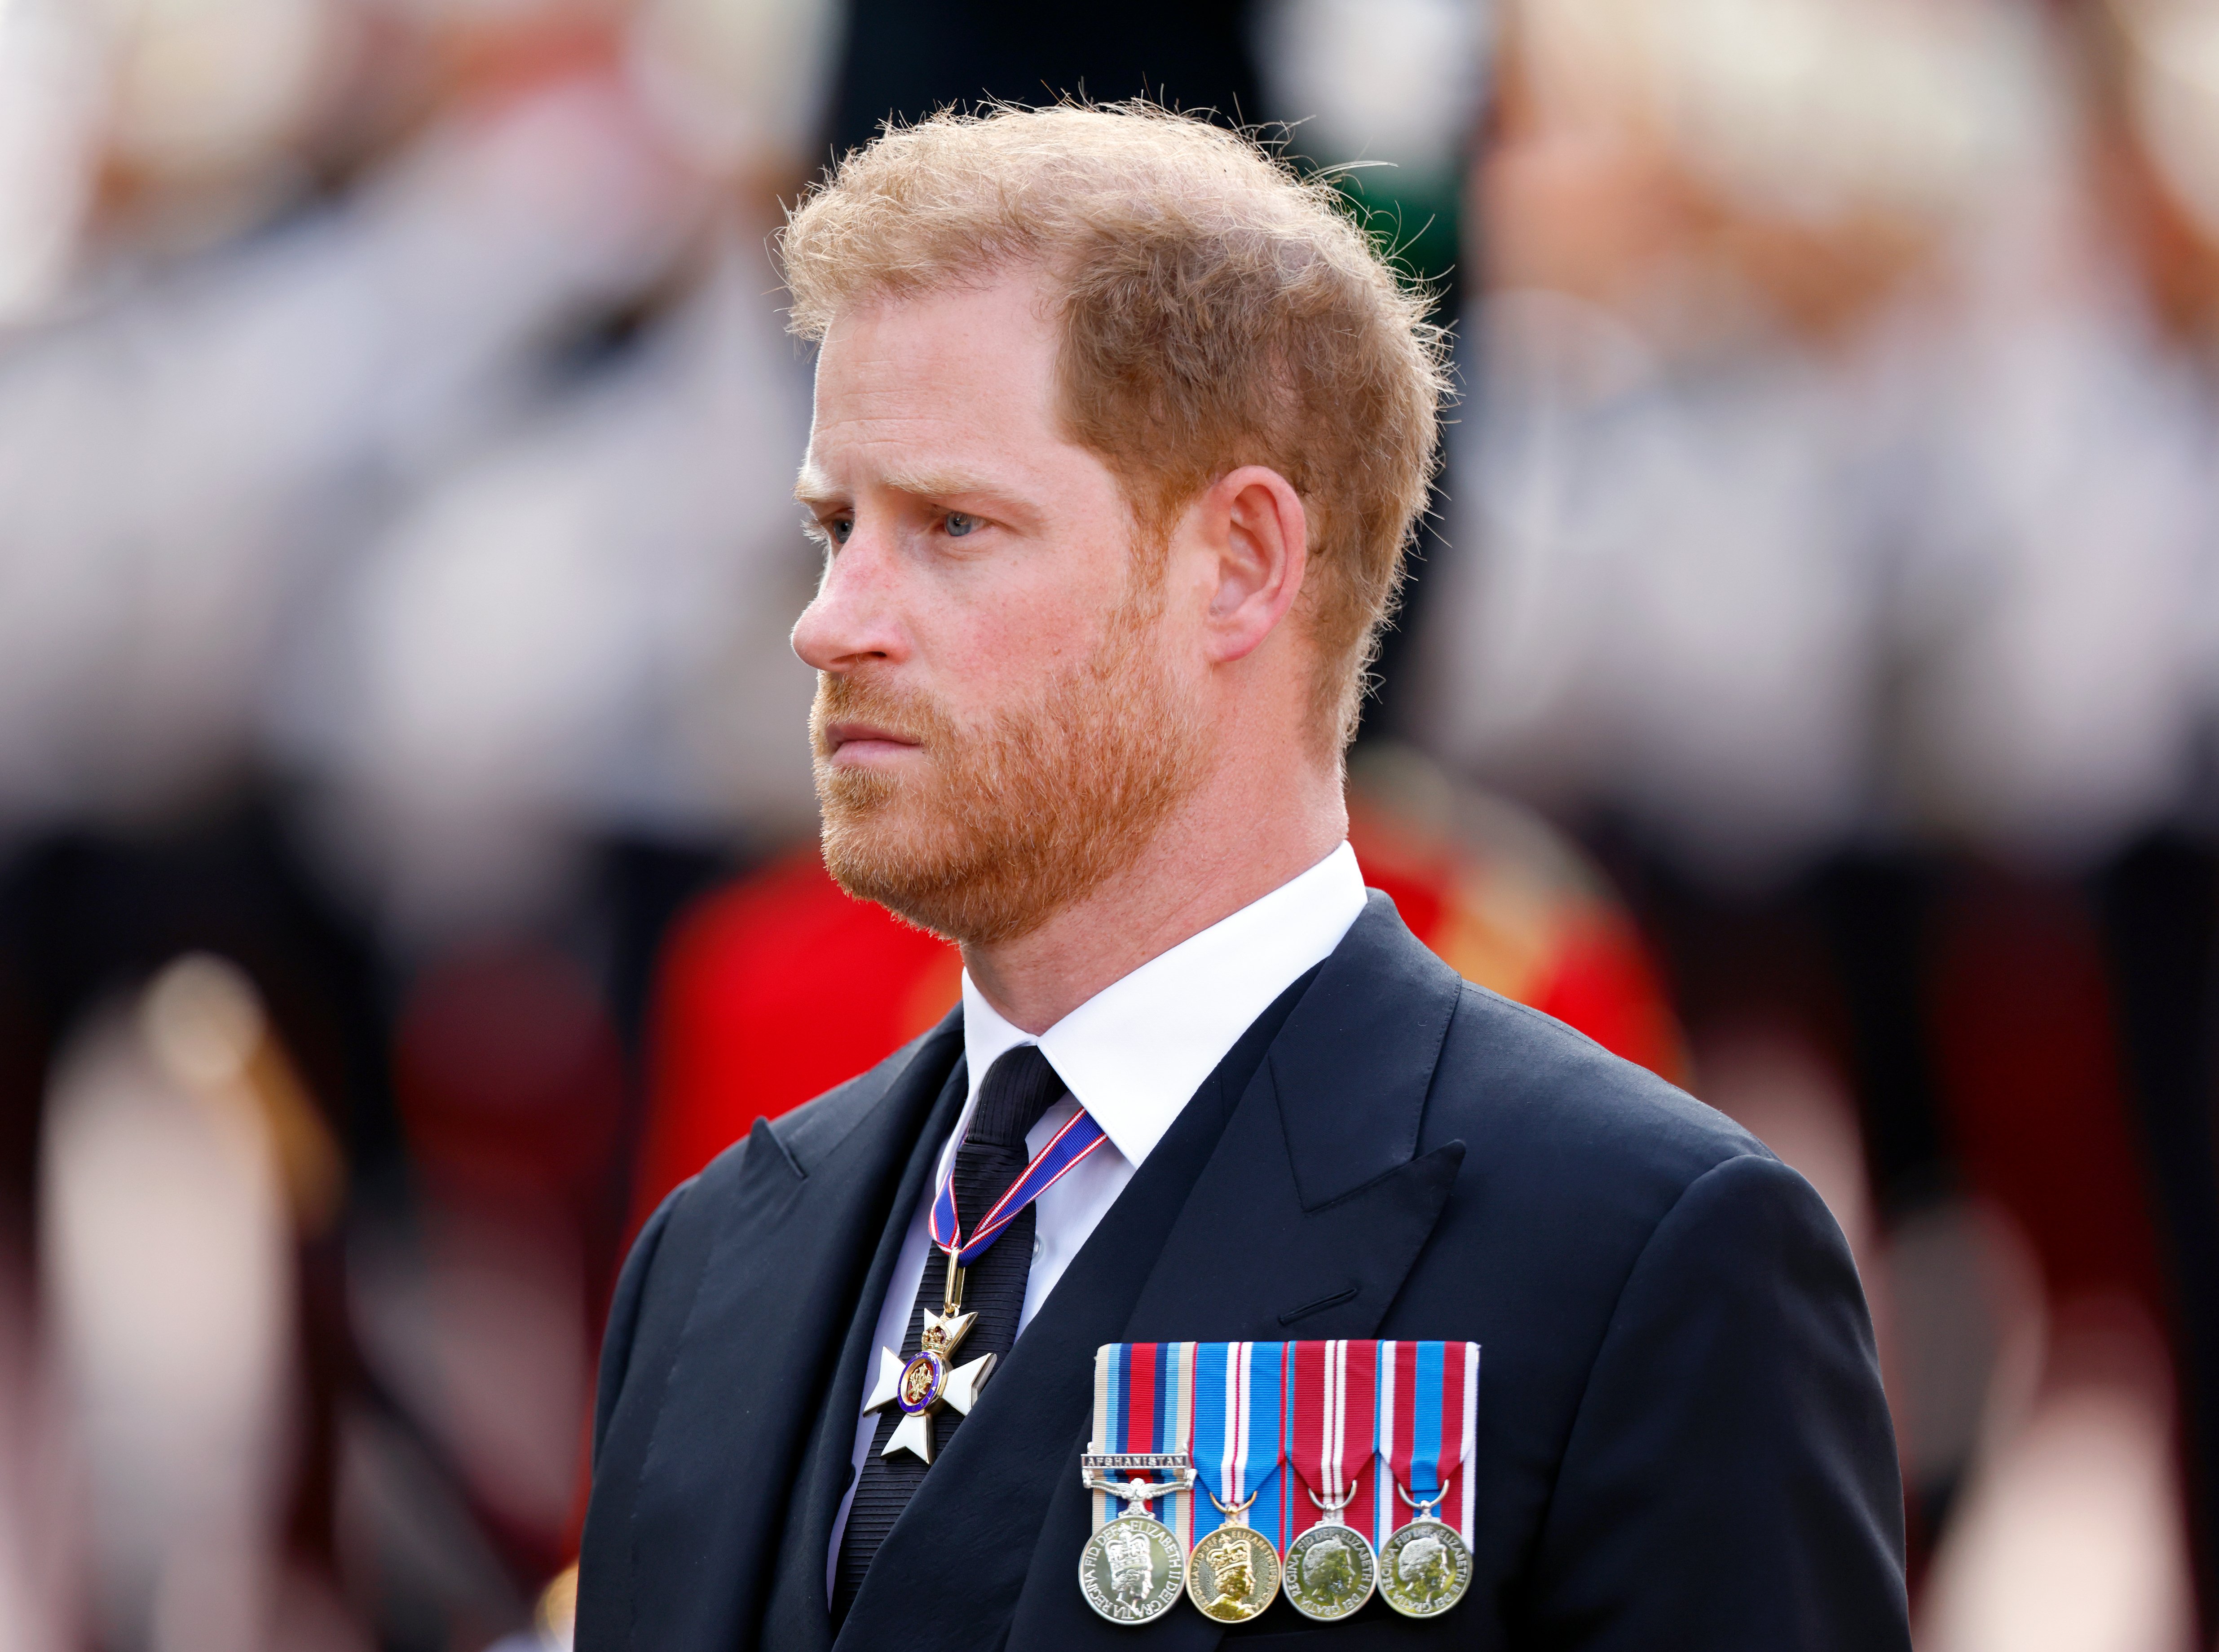 El príncipe Harry caminando detrás del ataúd de la reina Elizabeth II desde el palacio de Buckingham hasta el palacio de Westminster, el 14 de septiembre de 2022 en Londres, Reino Unido. | Foto: Getty Images